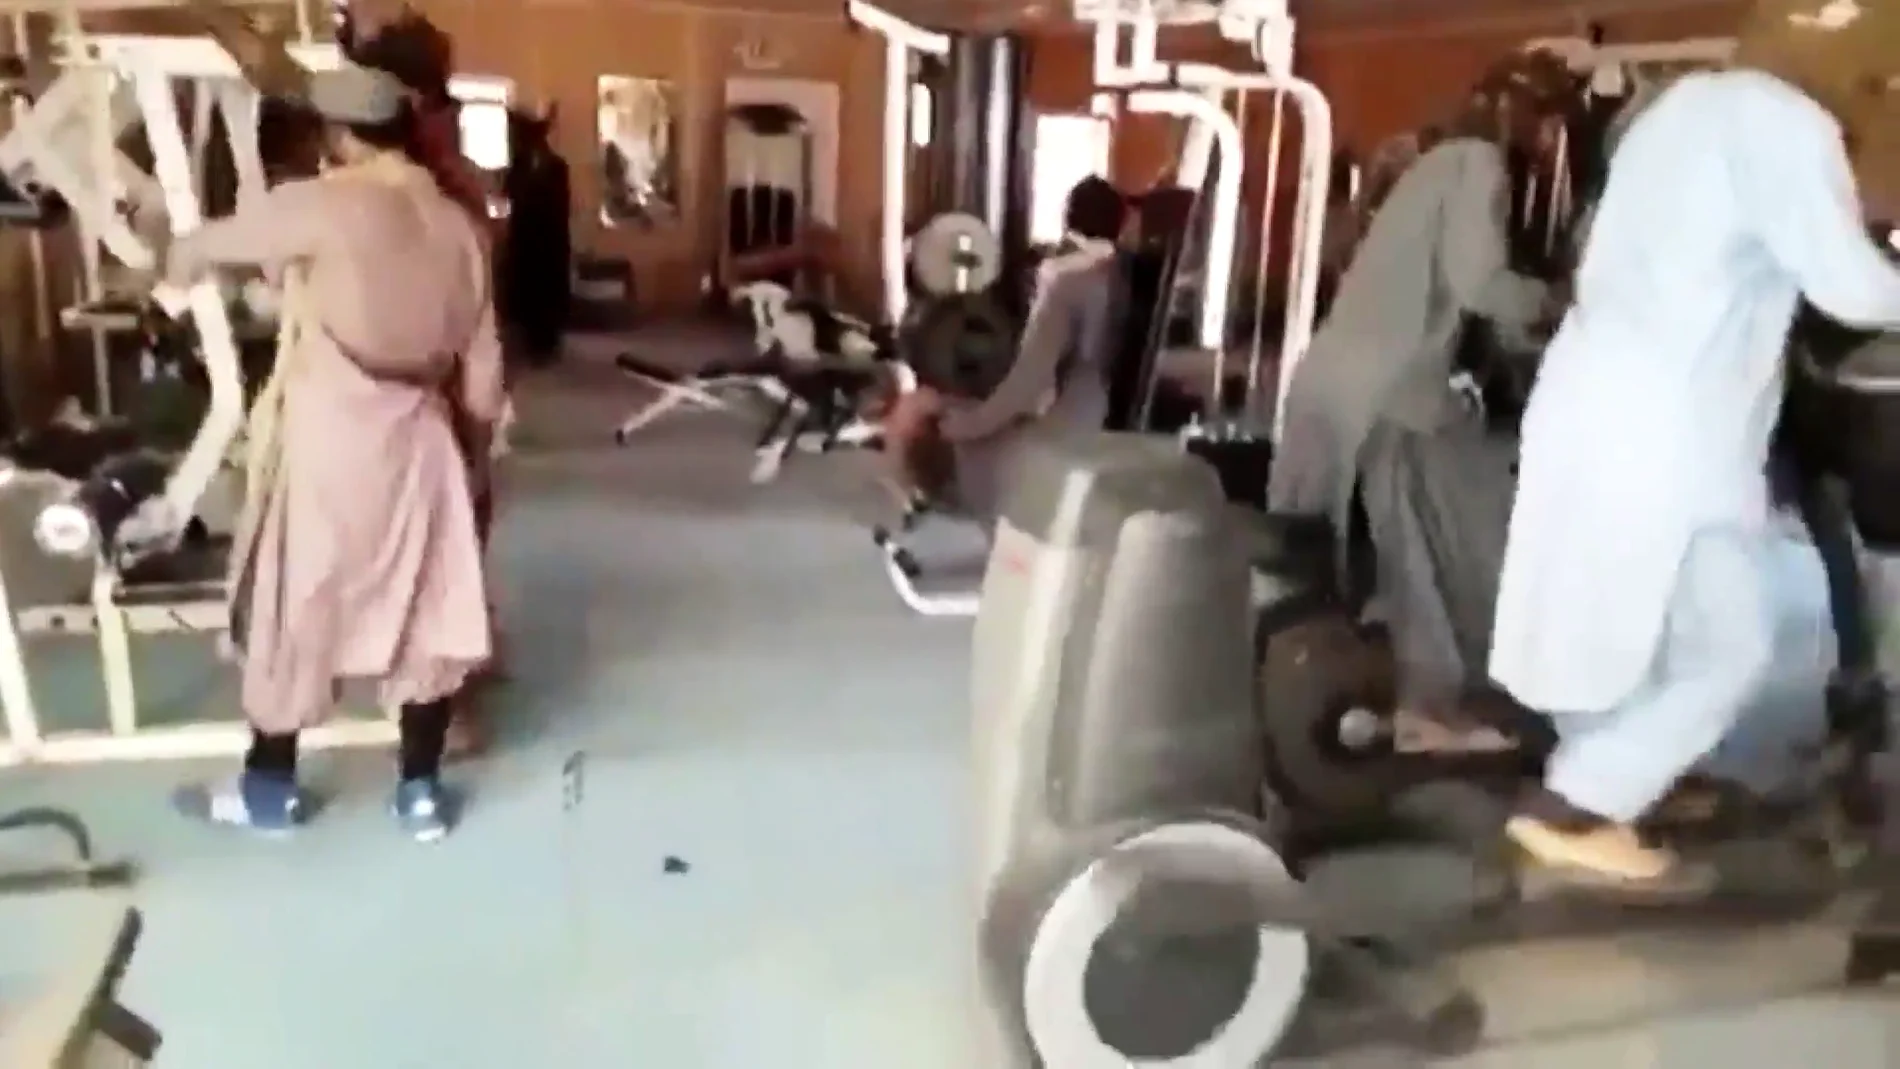 La imagen de los talibanes en el gimnasio del palacio presidencial probando una elíptica por primera